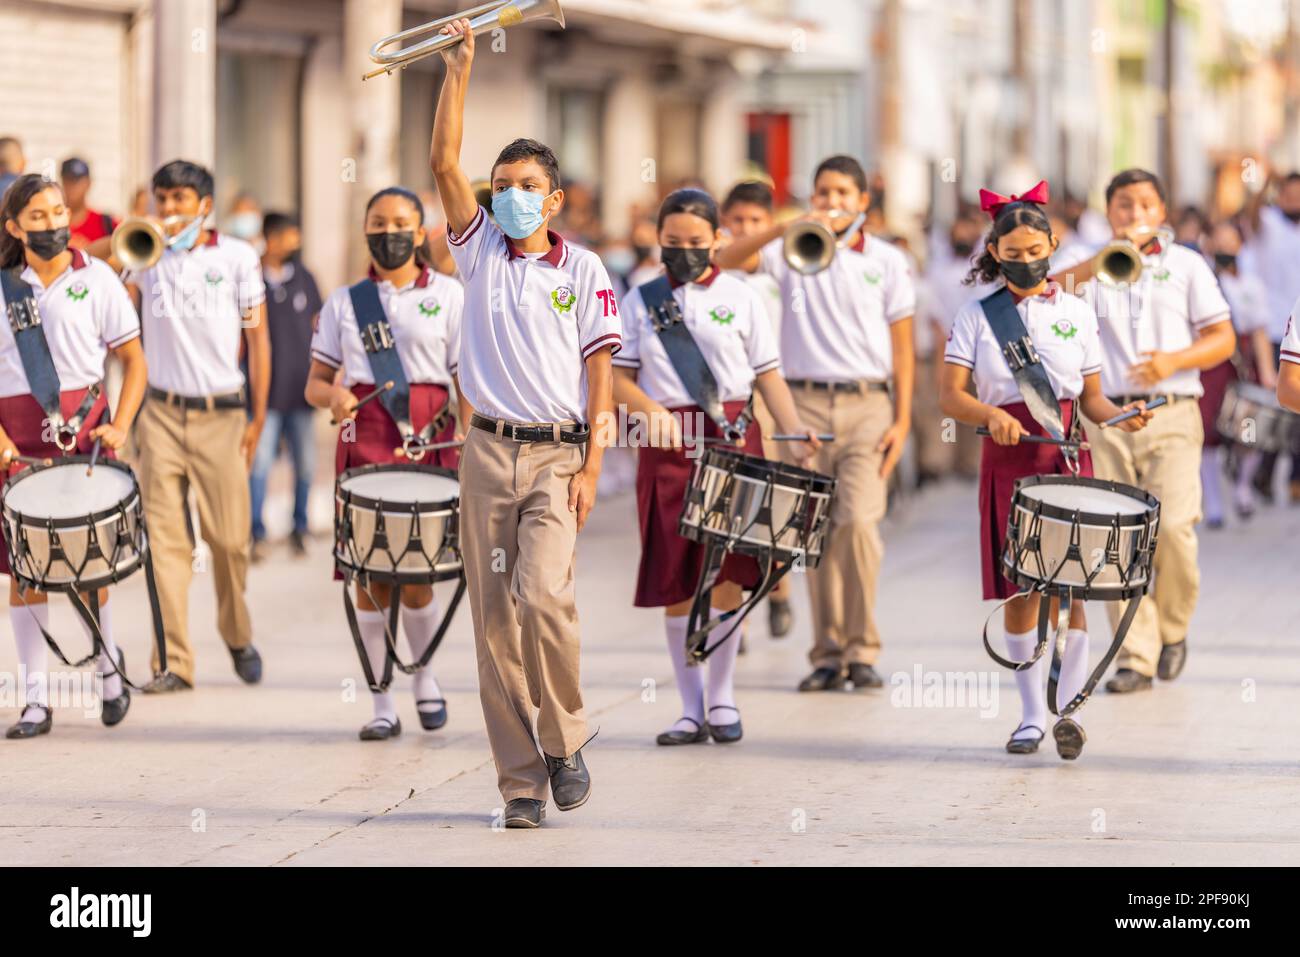 Matamoros, Tamaulipas, Mexico - September 16, 2022: Desfile 16 de Septiembre, Members of the Escuela Secundaria Tecnologica 76 Marching Band performin Stock Photo